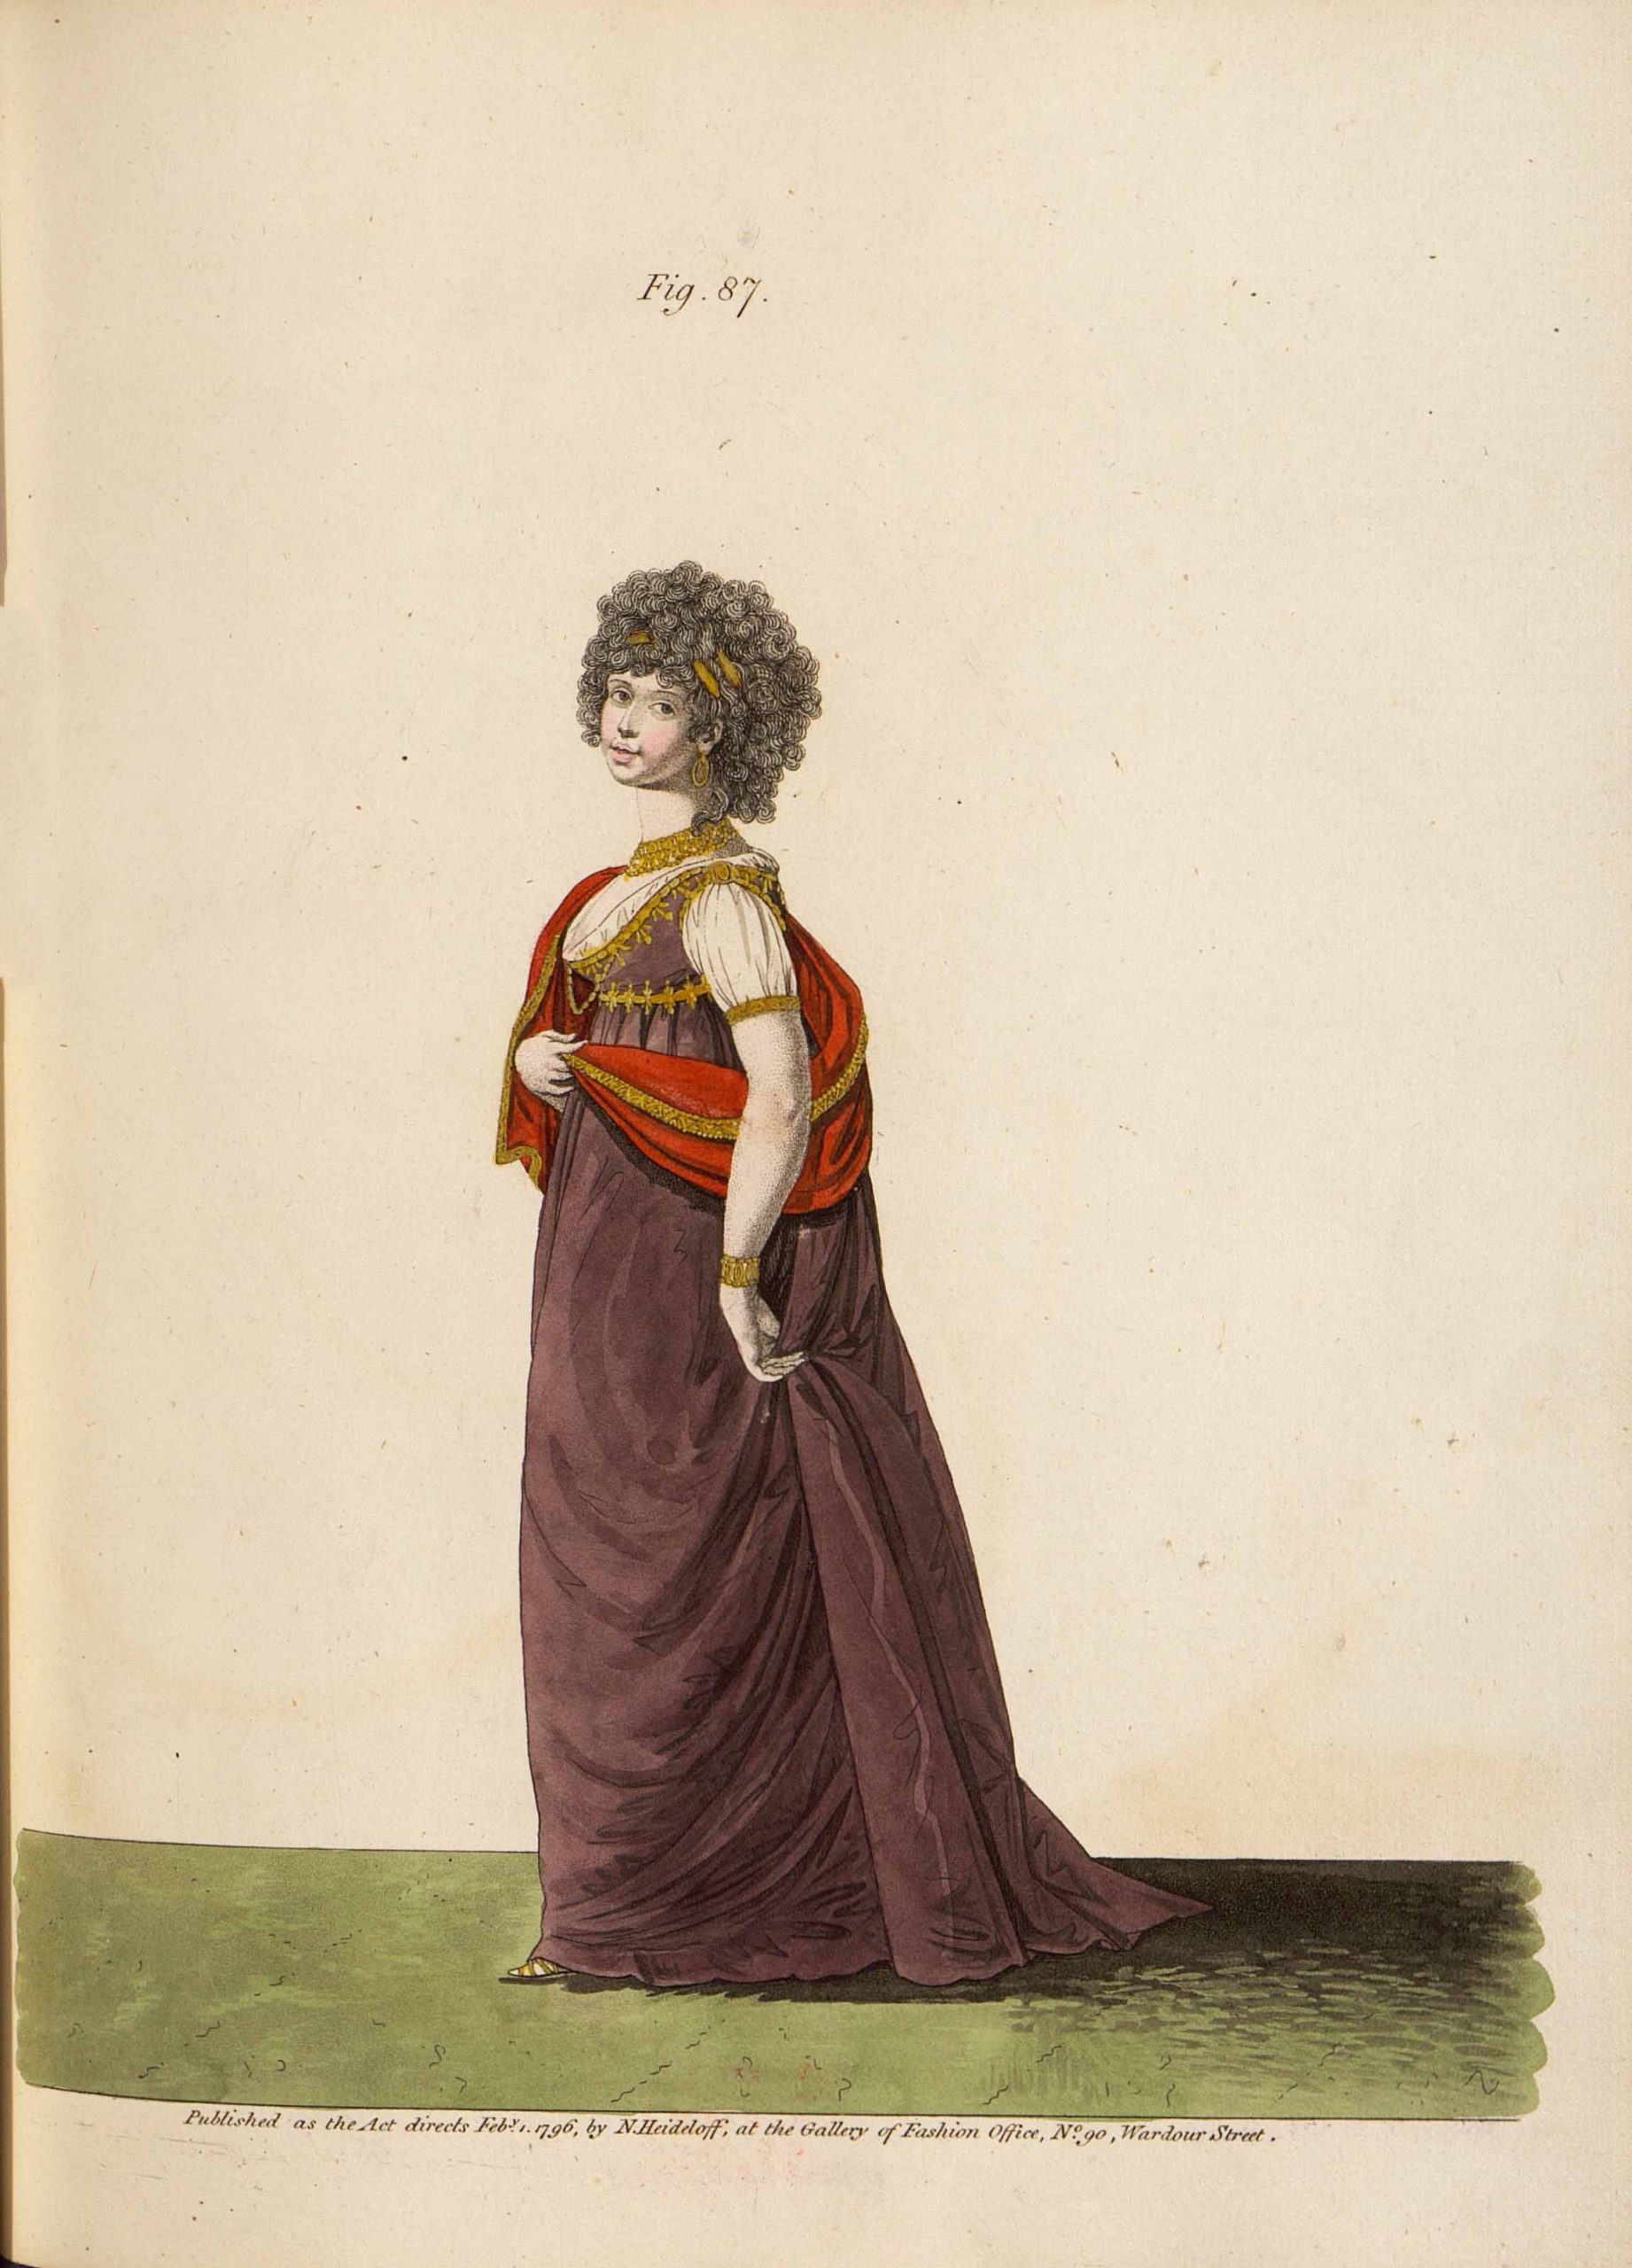 Н. Хайдельхоф. Модный дамский костюм. Лист из журнала «The Gallery offashion». Великобритания. 1796 г.